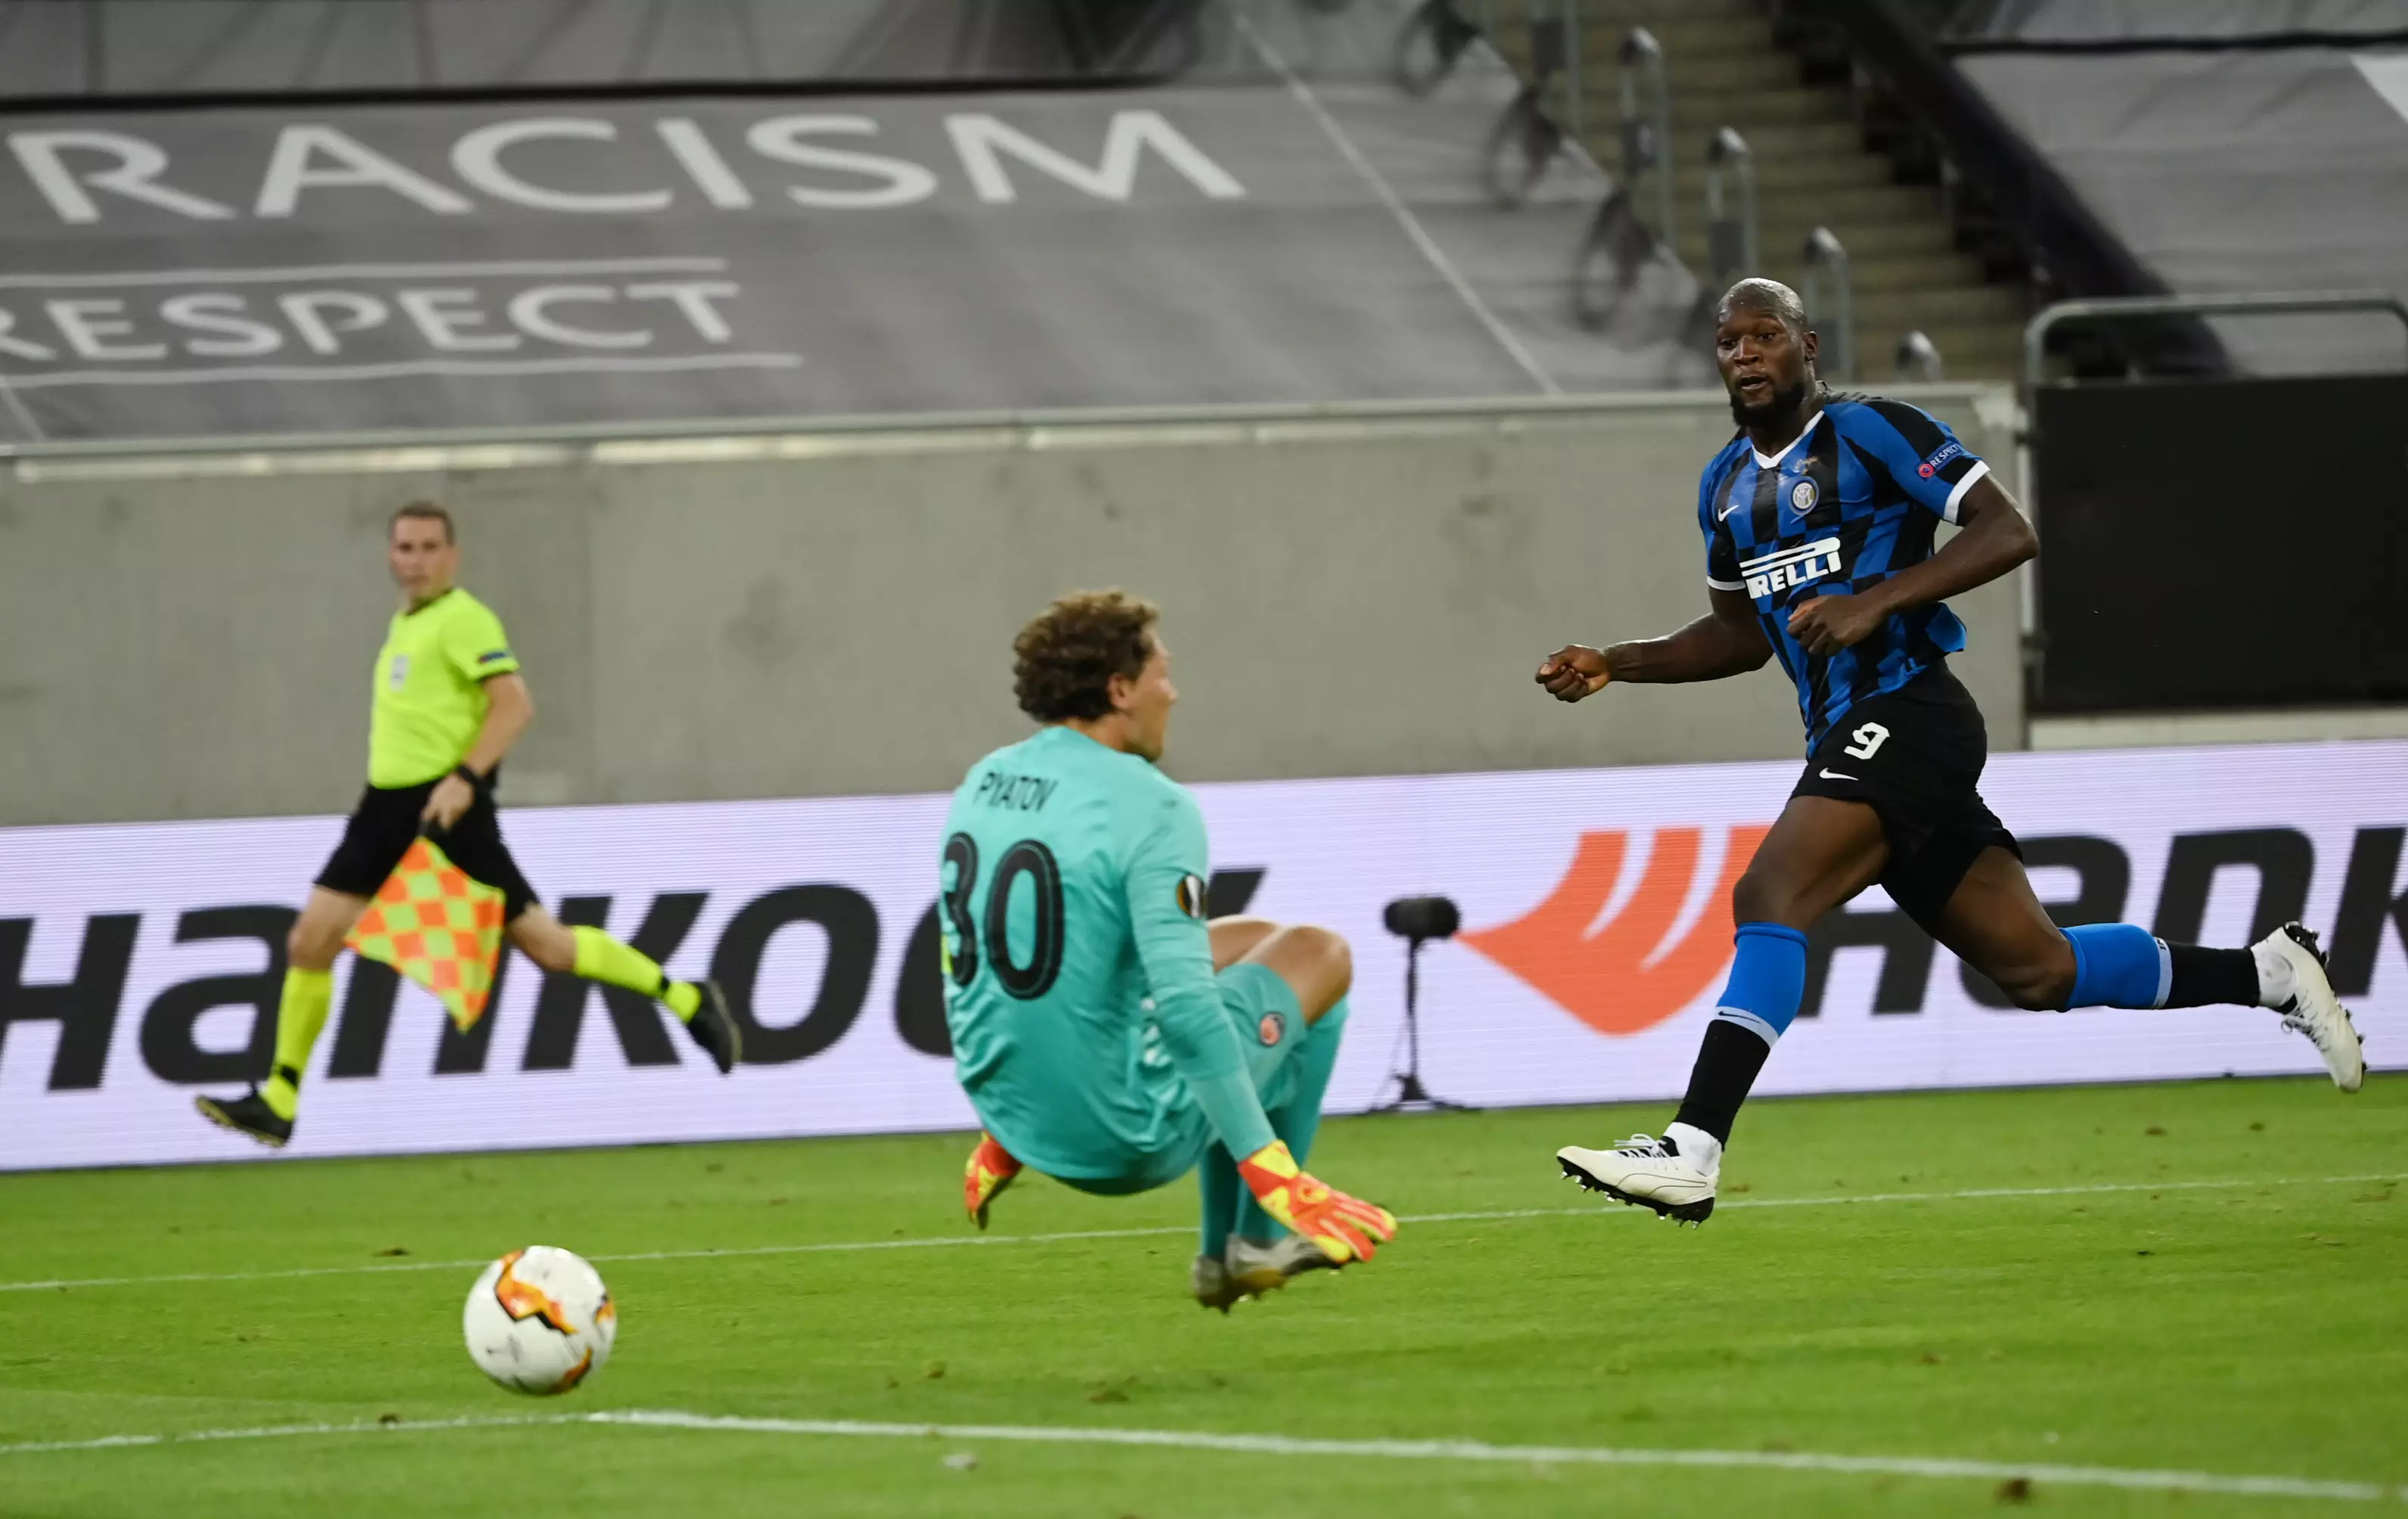 Lukaku scoring in the Europa League semi-final. Image: PA Images